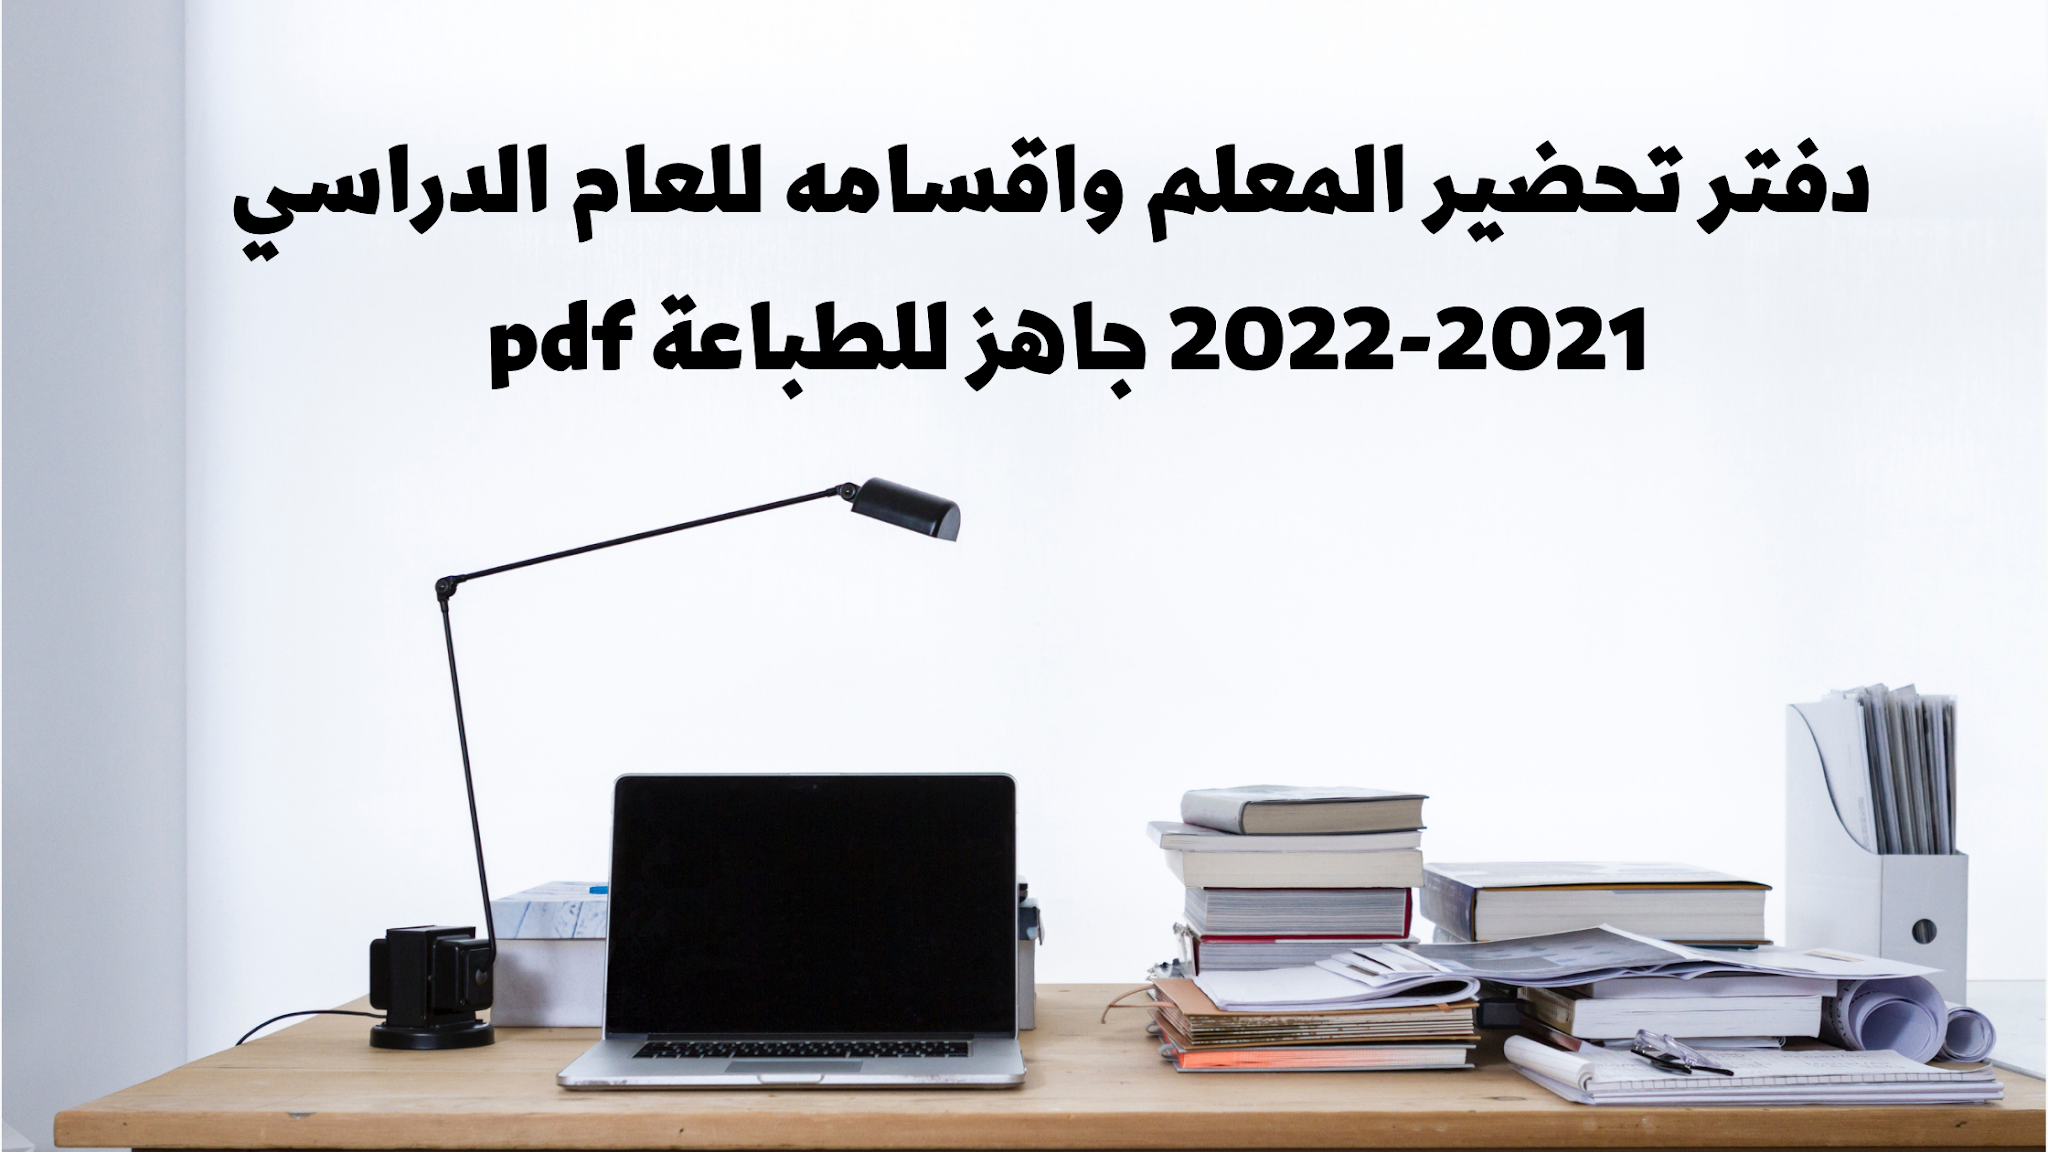 دفتر تحضير المعلم واقسامه للعام الدراسي 2021-2022 جاهز للطباعة pdf